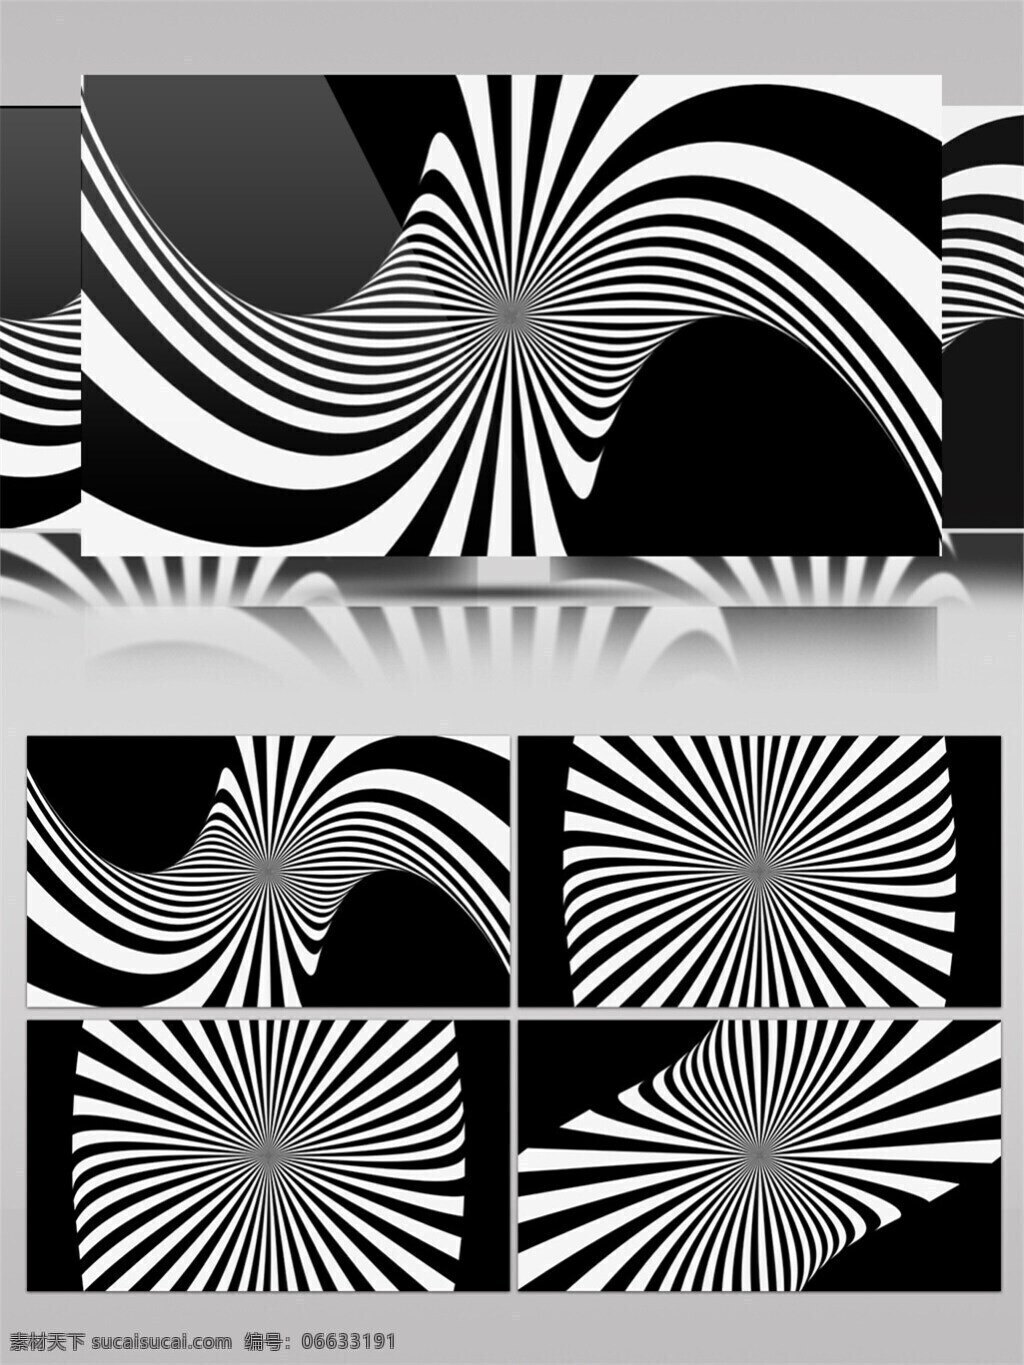 黑白 炫 酷 logo 高清 视频 动态展示 背景 黑白画风 特效 旋转白色 装饰风格